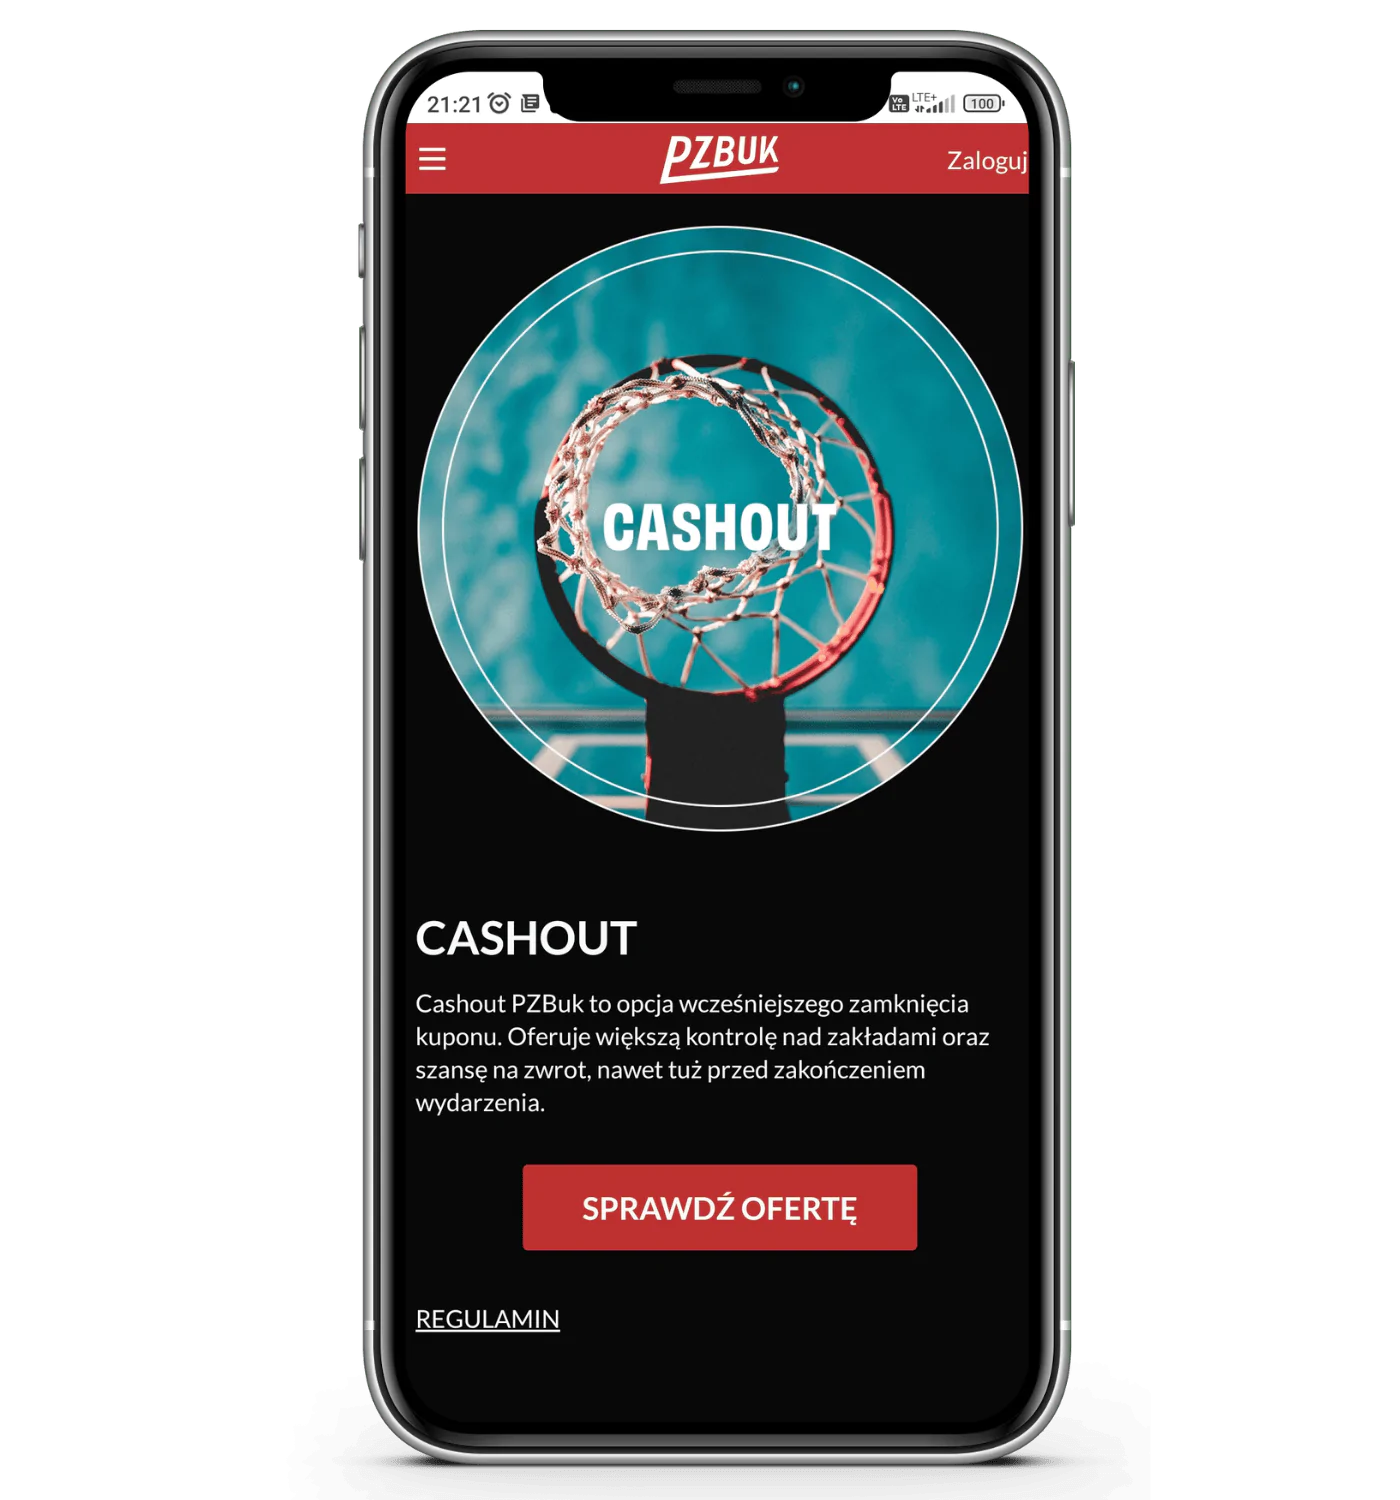 Promocja CASHOUT w aplikacji mobilnej PZBuk